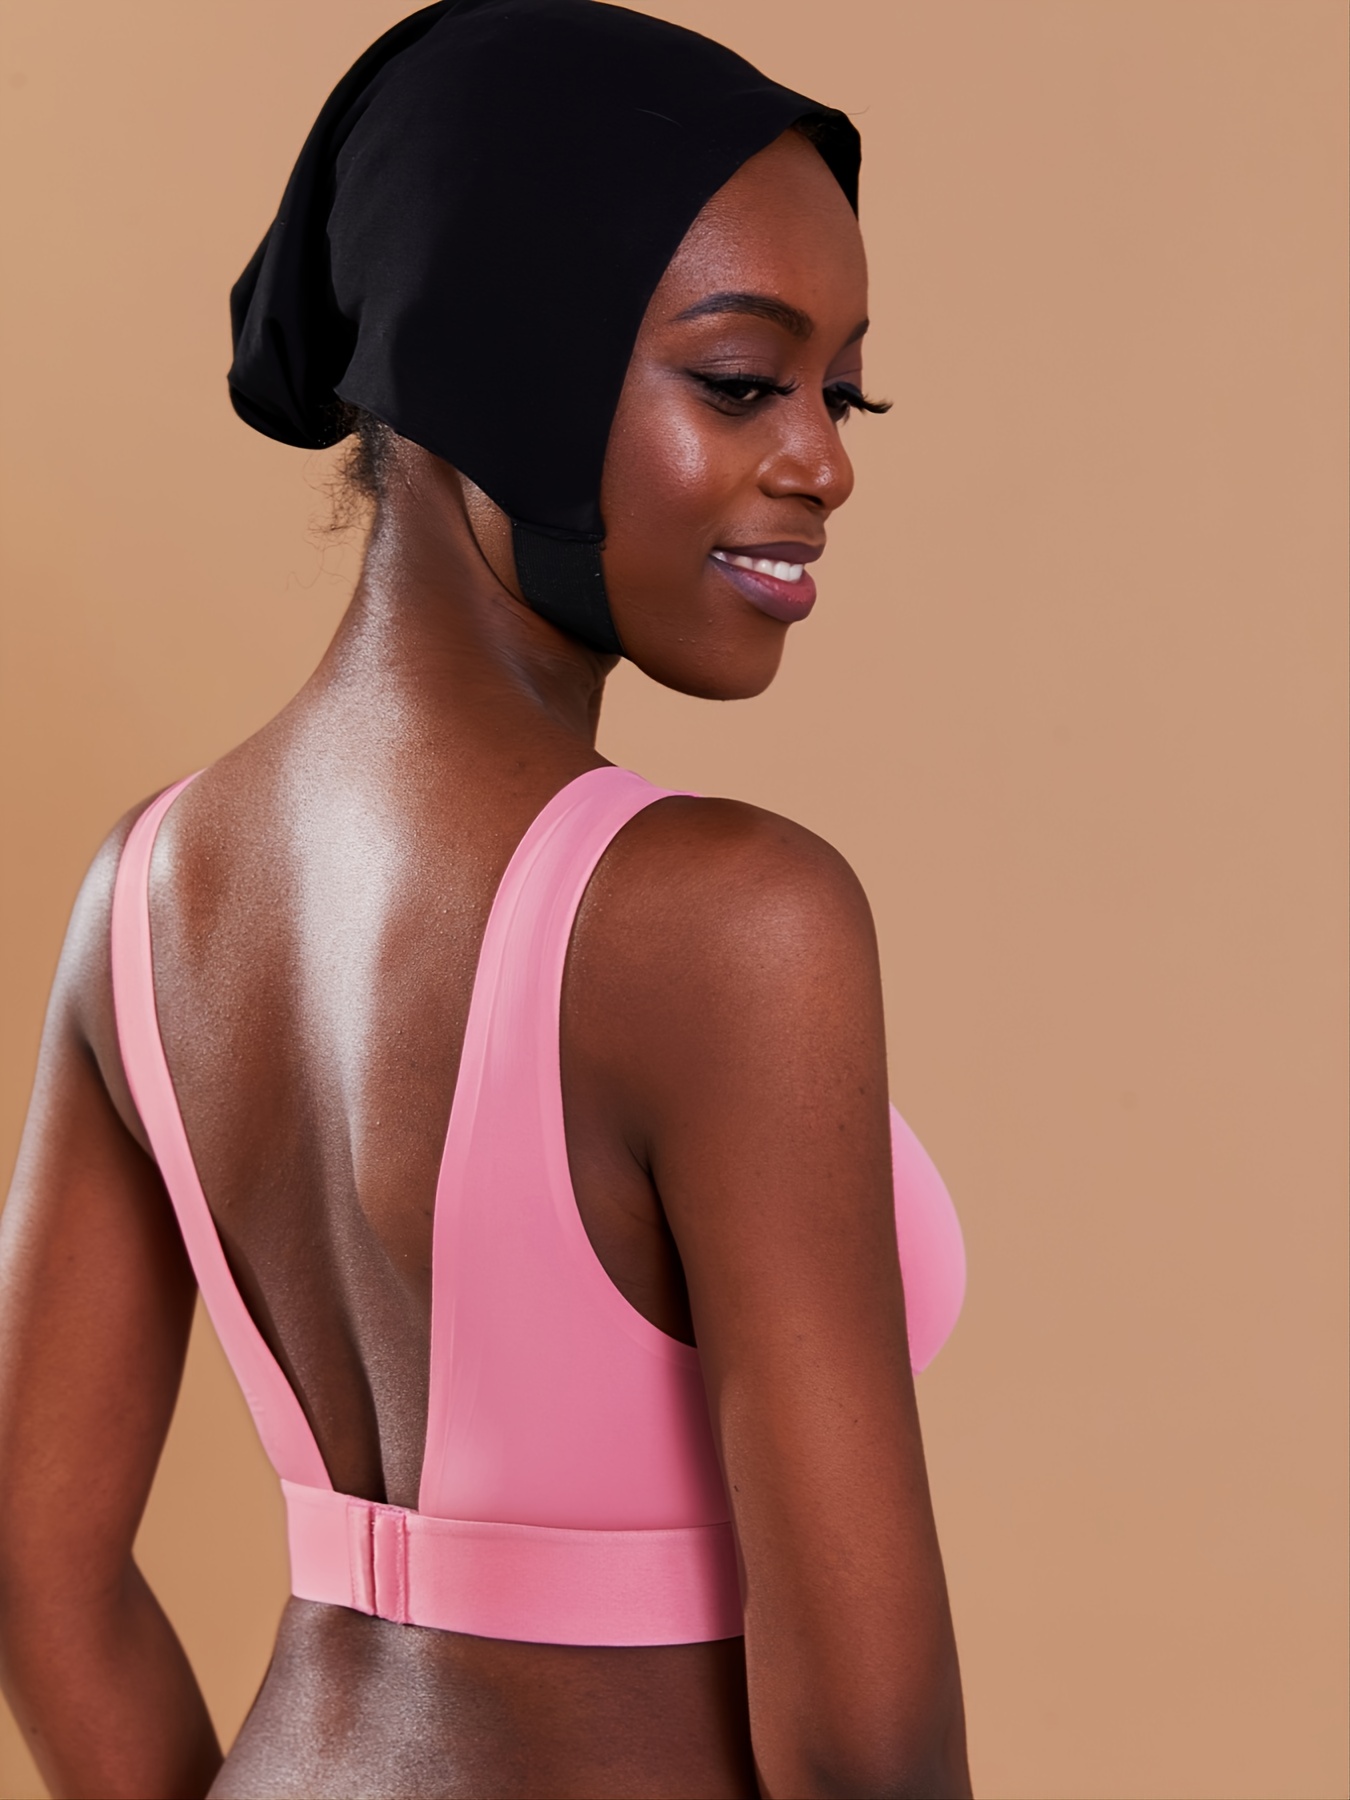 Buy NanoEdge Present Women Crop Top V Neck Bra Bralette Vest Halter Black  Sleeveless Top Free Size (28 Till 32) Pack of 1 (White) at